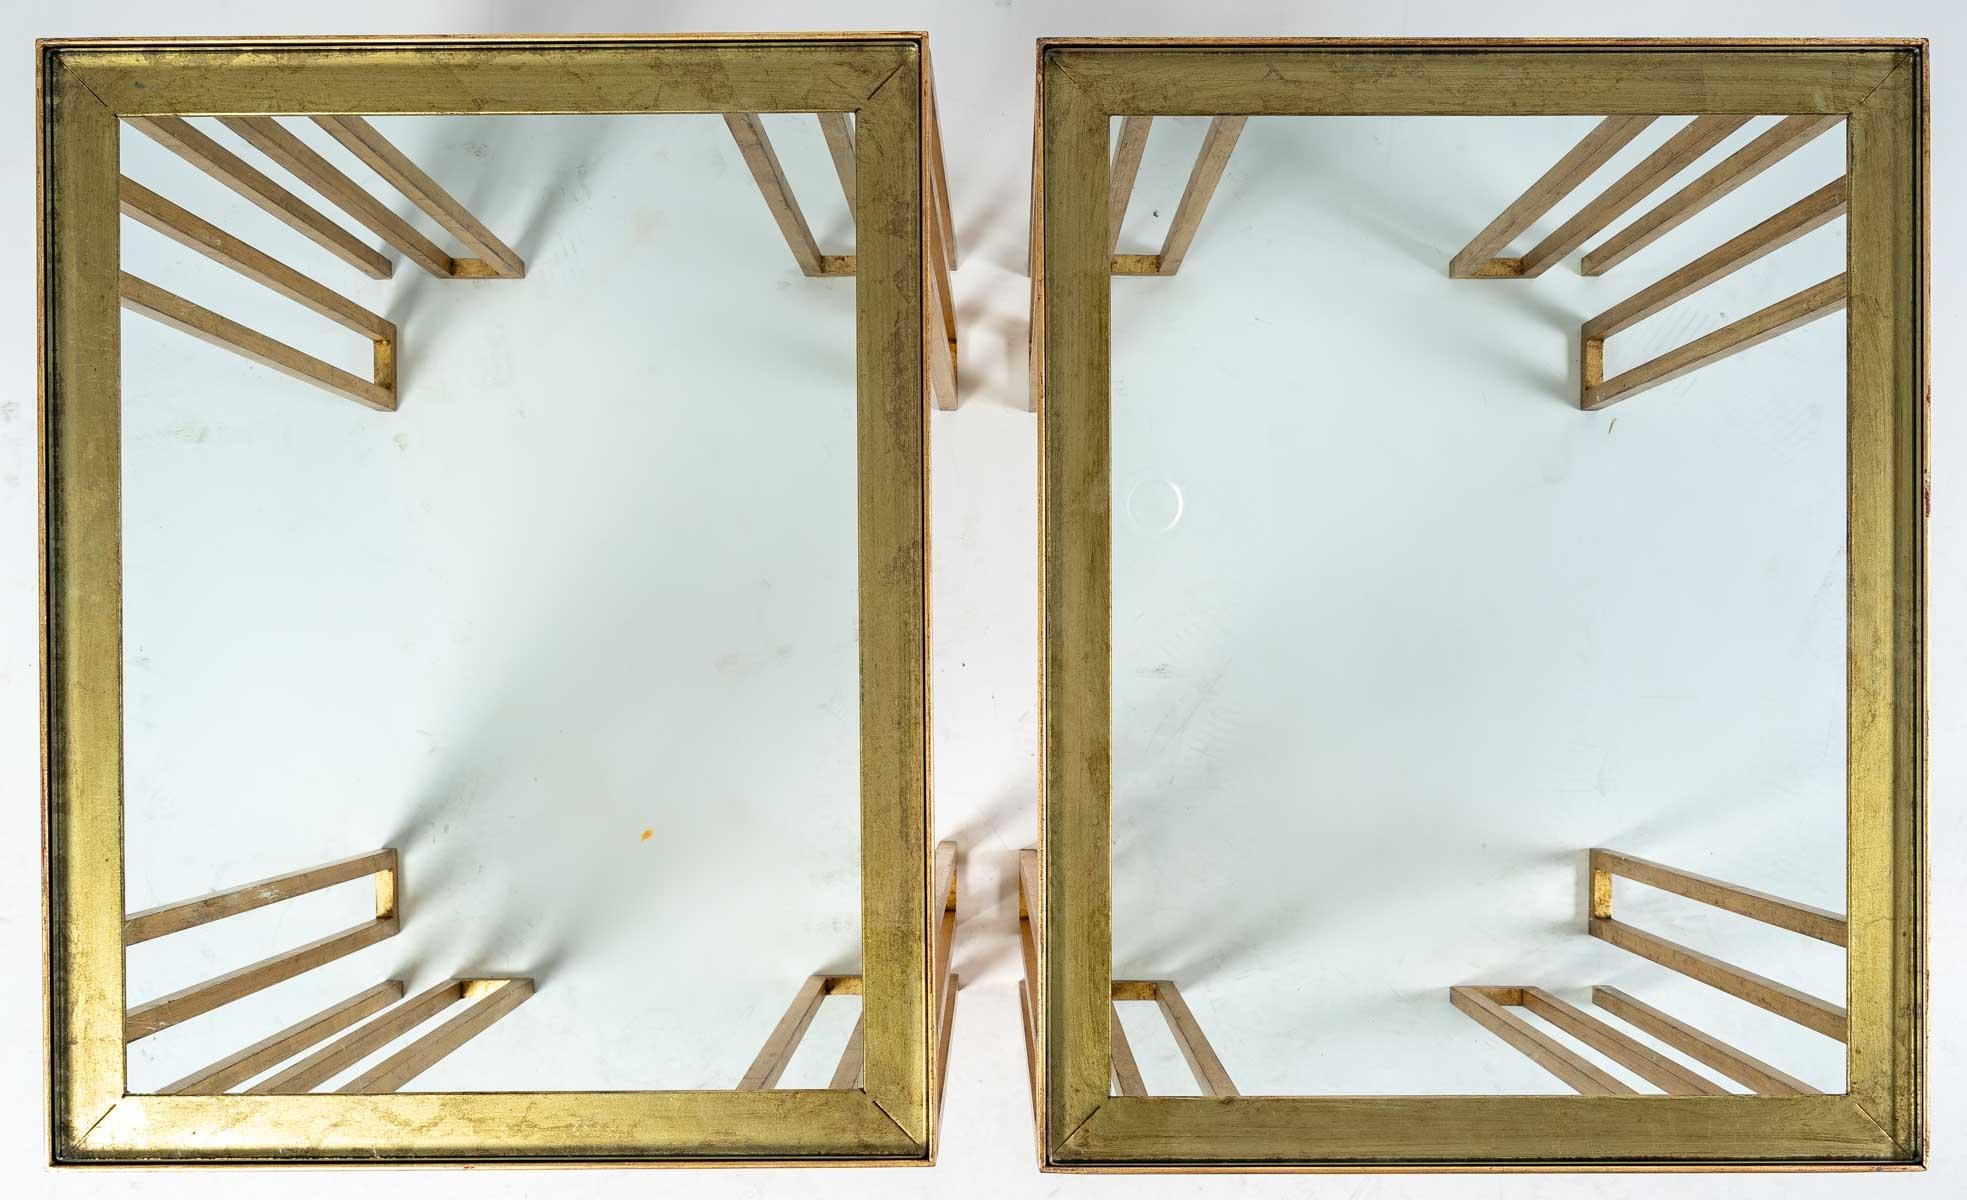 Paar vergoldete Sofagarnituren oder Beistelltische aus Eisen, Modell von Jean Royère.
Produktion 1970 - 1980er Jahre
Sehr gute Qualität, mit Blattgold vergoldet
Maße: H: 59 cm, B: 61 cm, T: 48 cm
Jean Royère (1902 - 1981) ist ein französischer